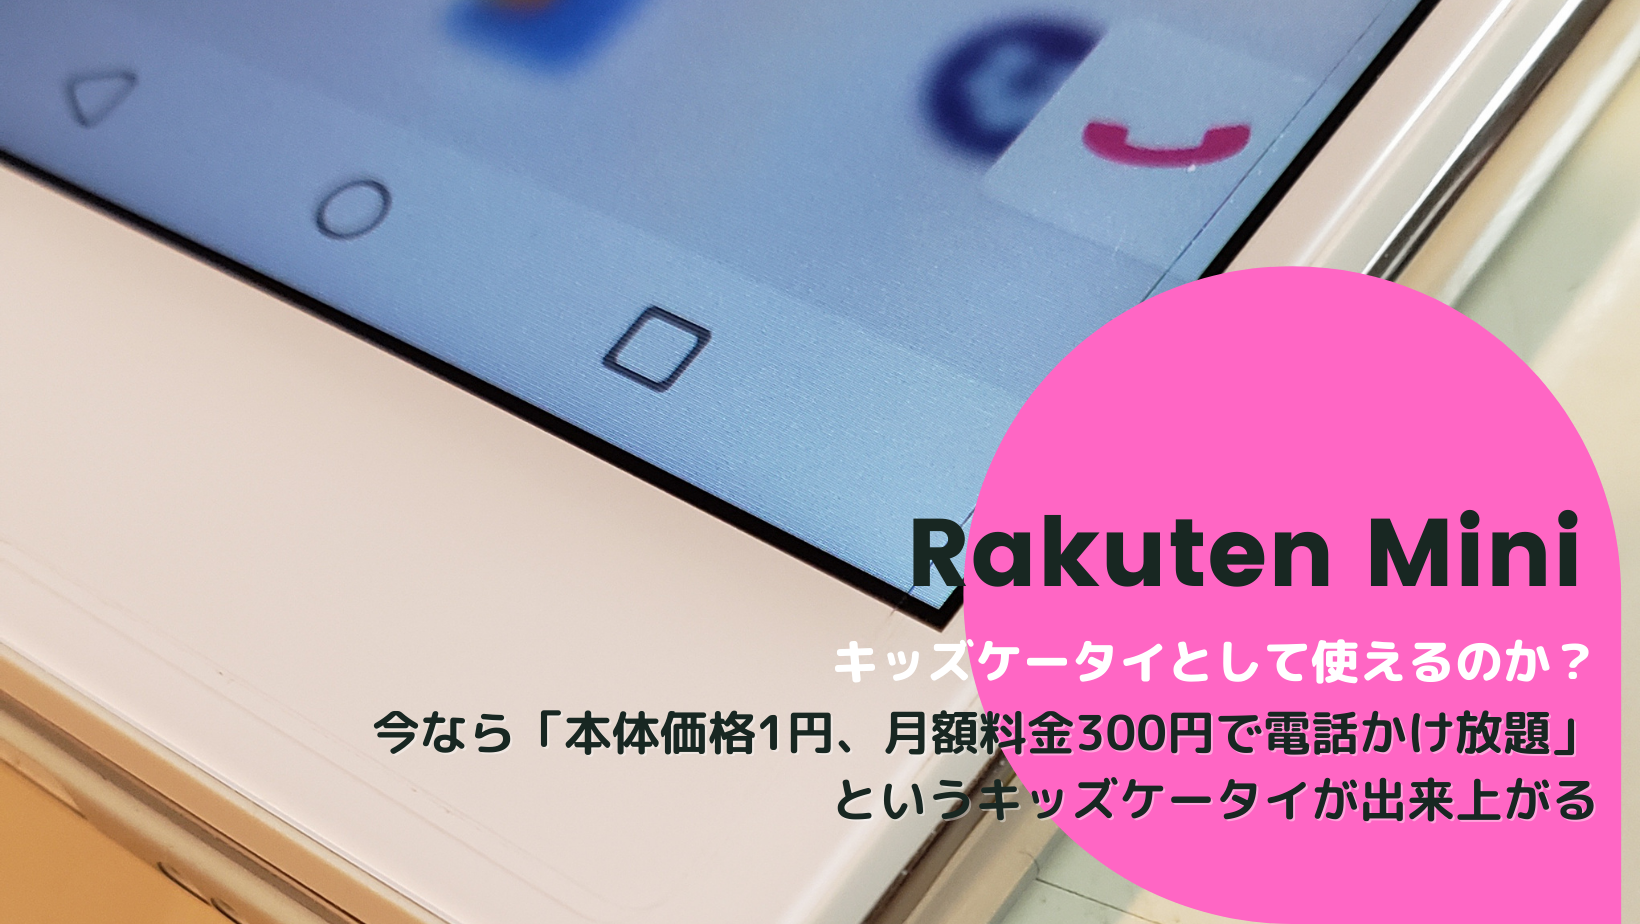 本体1円 Rakuten Miniはキッズケータイとして使えるのか Smart Holic スマホリ スマホ生活を充実させる方法